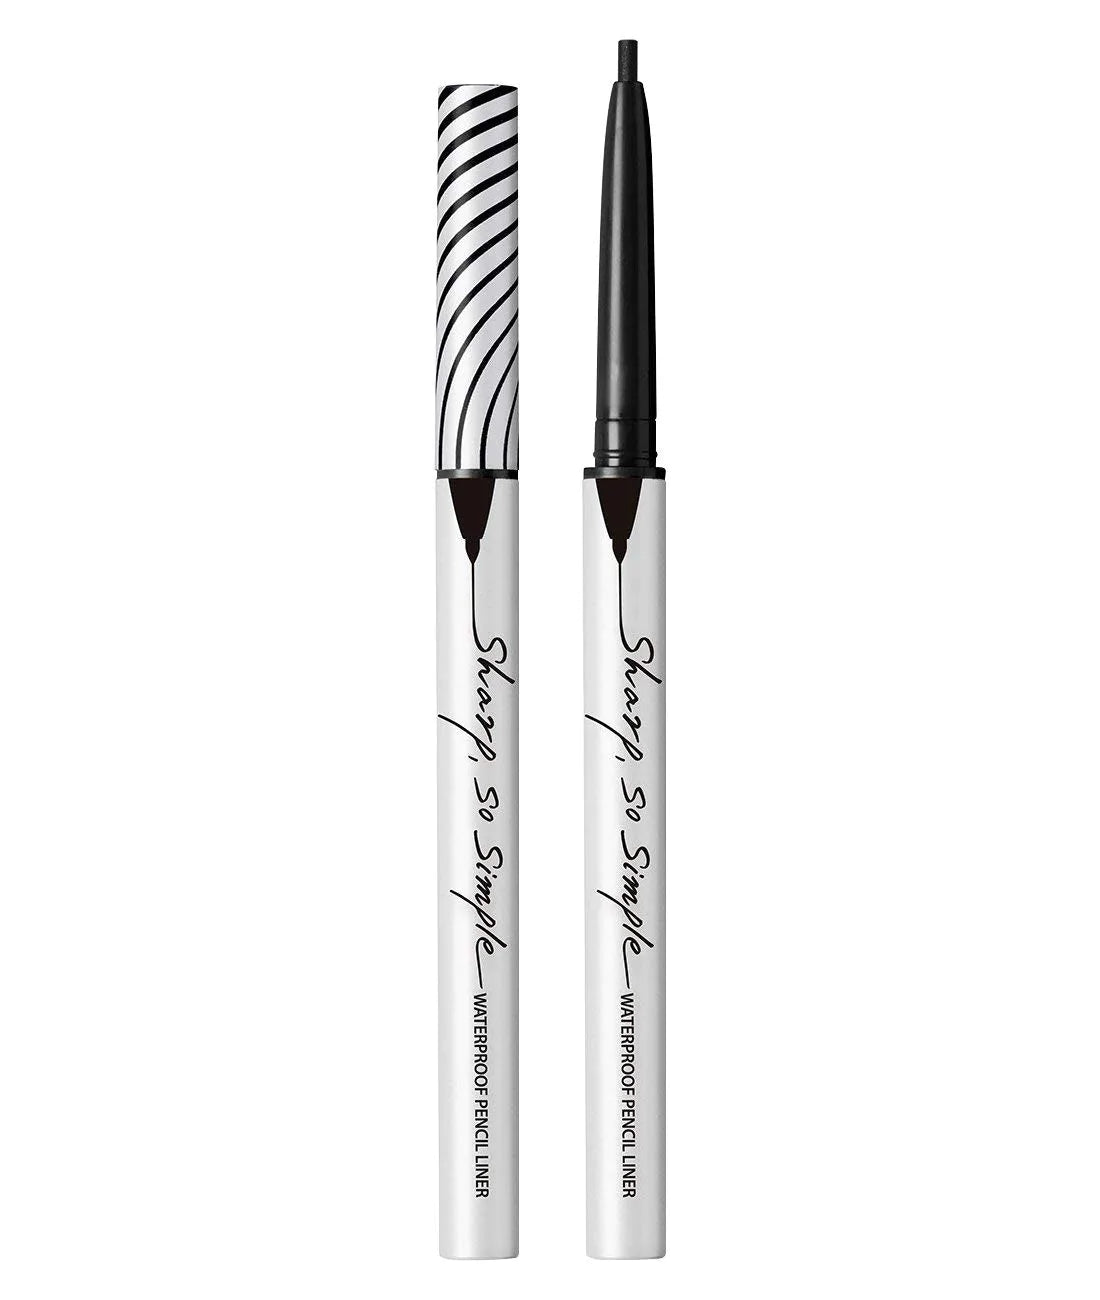 CLIO - Sharp, So Simple Waterproof Pencil Liner 01 Black